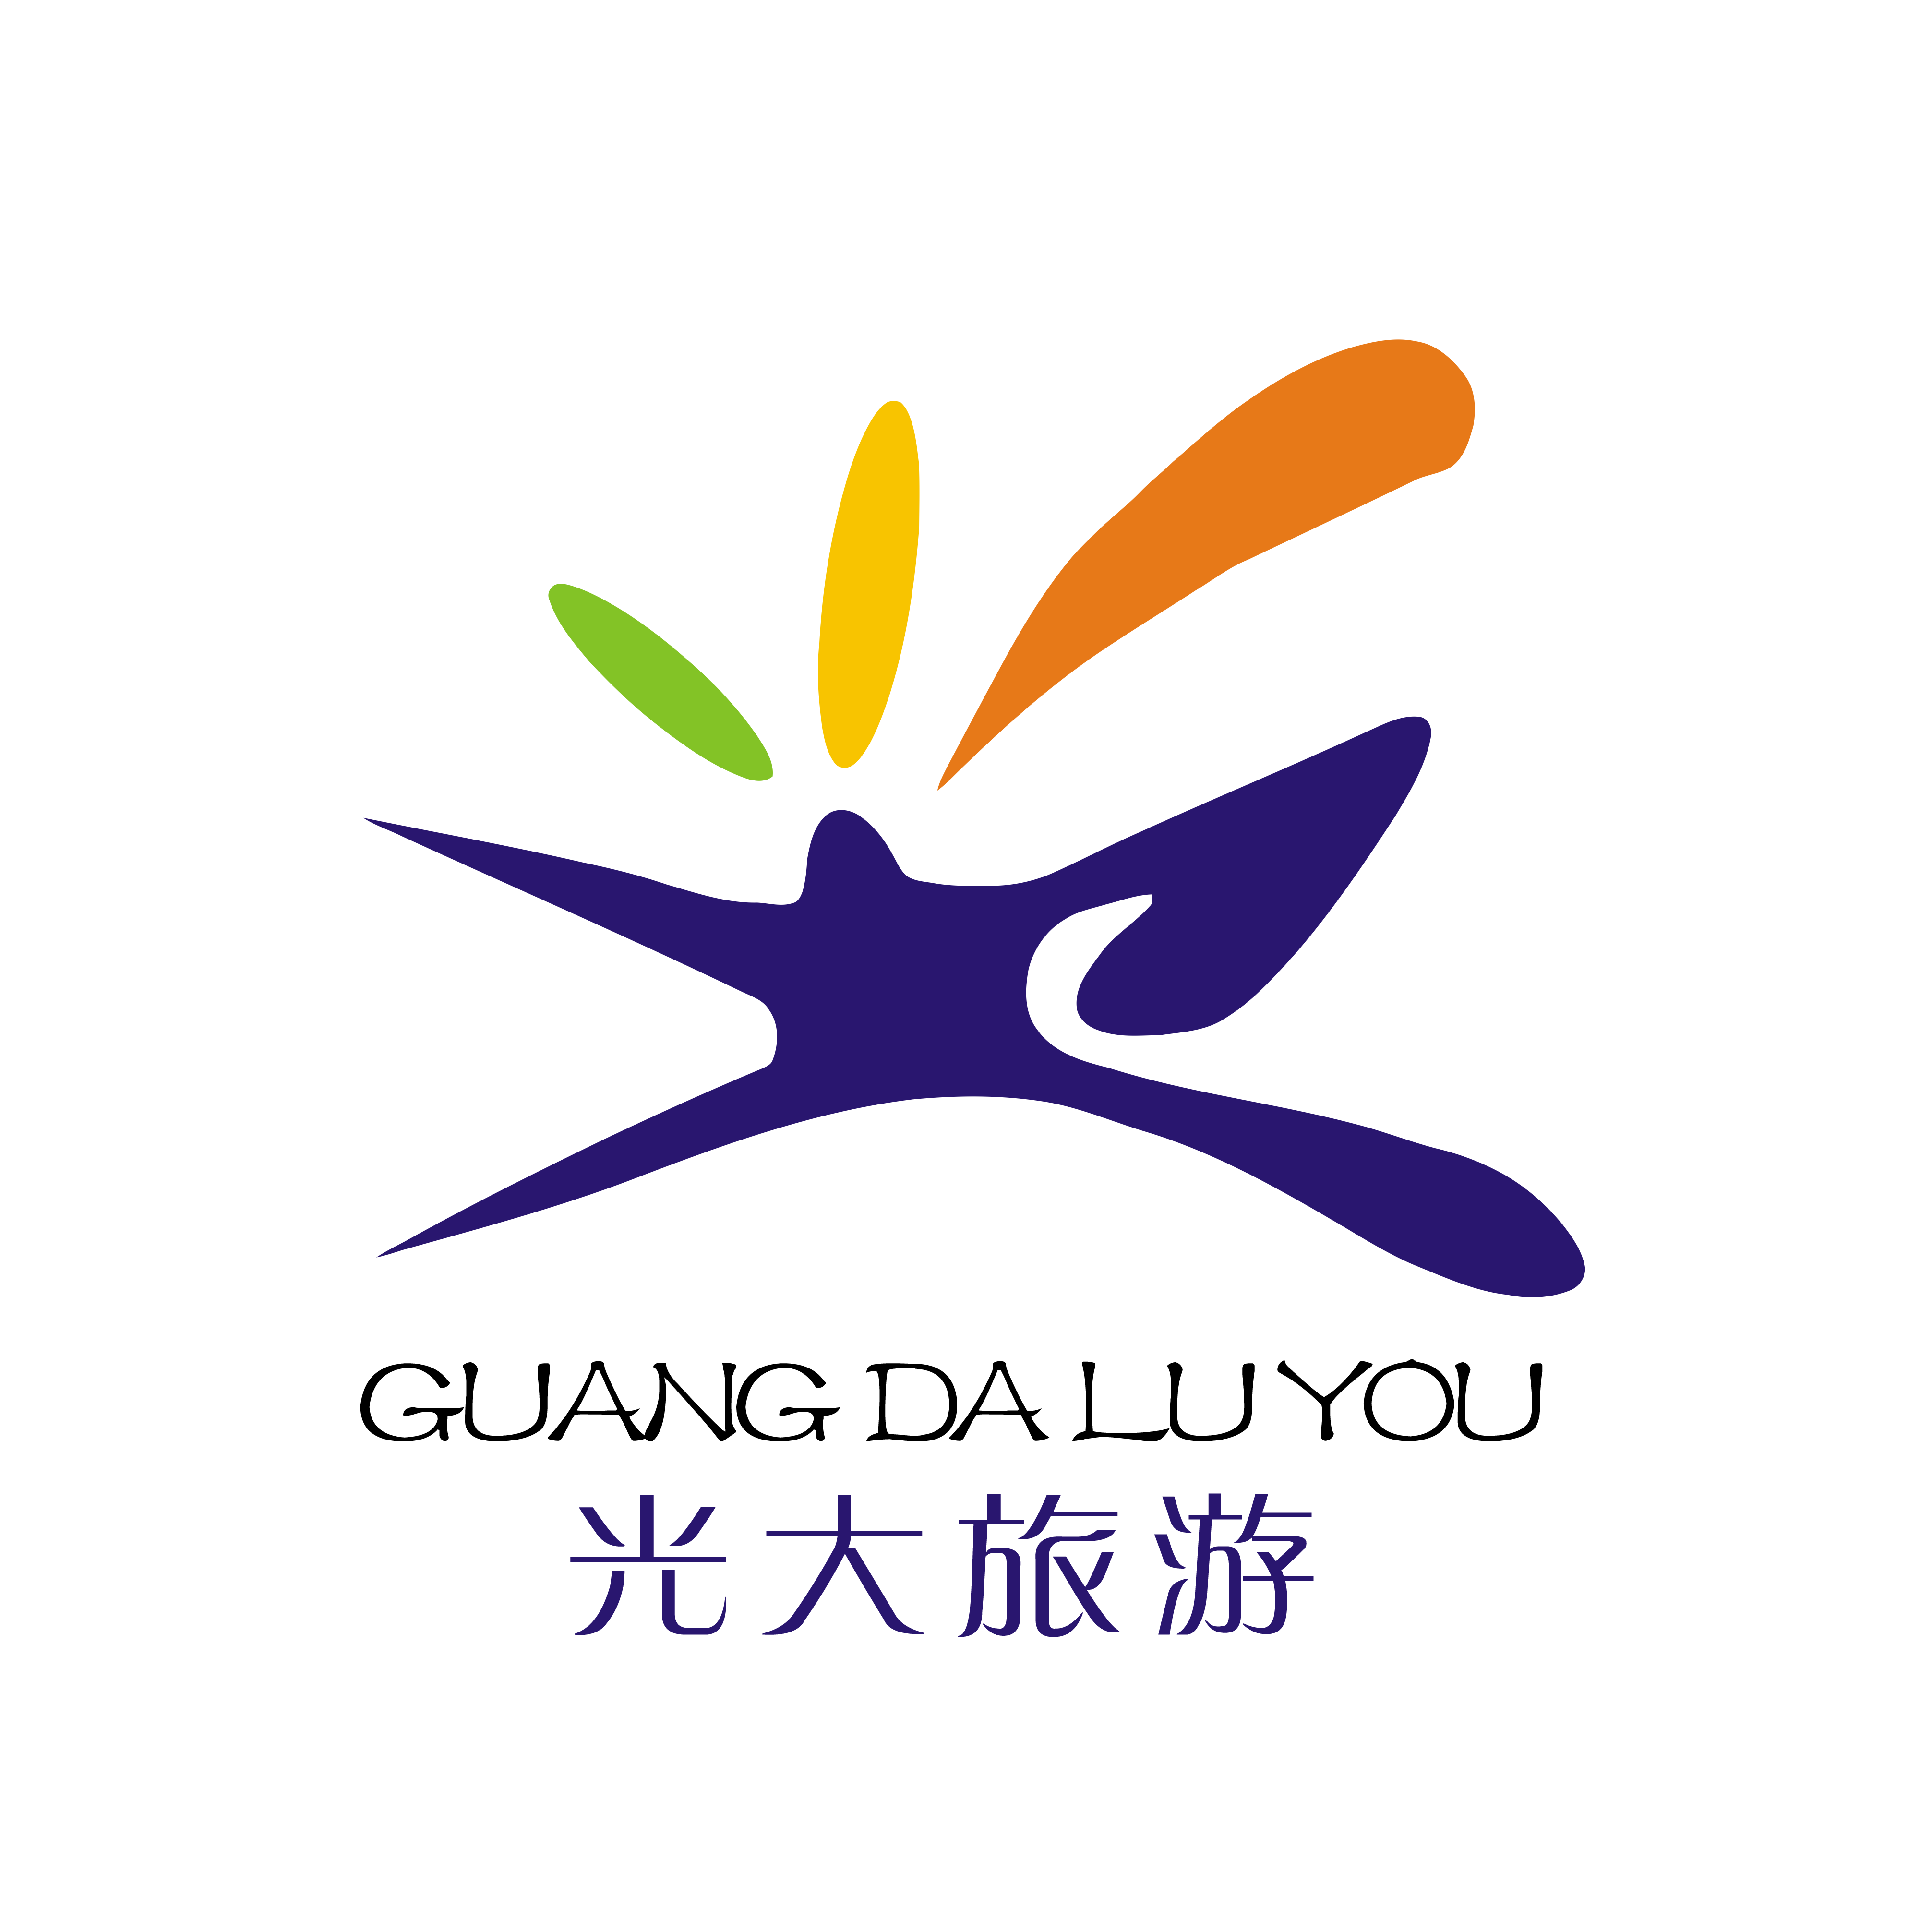 光大旅游logo.png